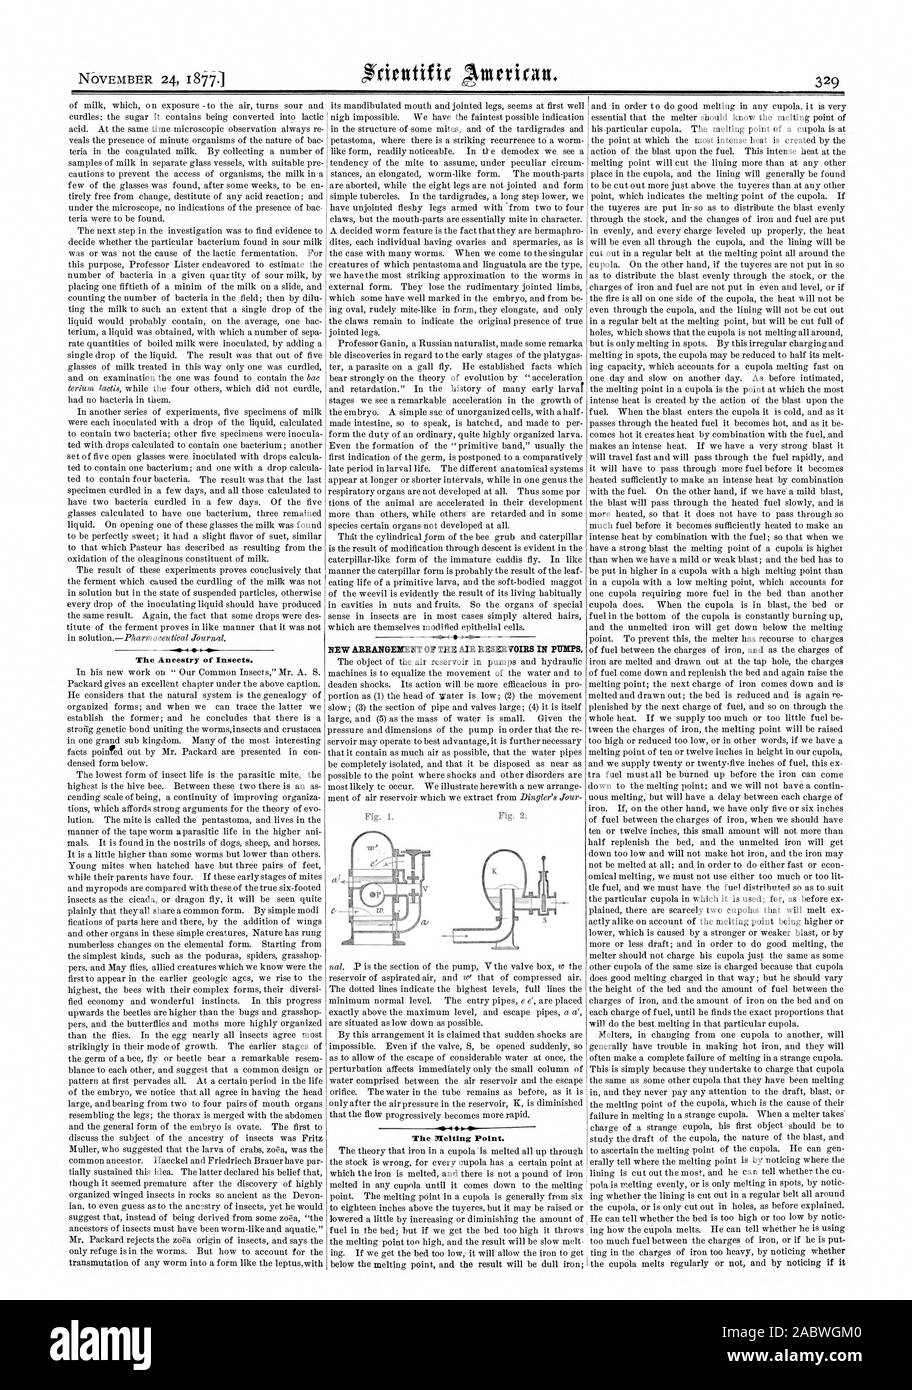 Neue ANORDNUNG DER LUFTKAMMERN IN PUMPEN. Den Schmelzpunkt. Die Vorfahren von Insekten., Scientific American, 1877-11-24 Stockfoto